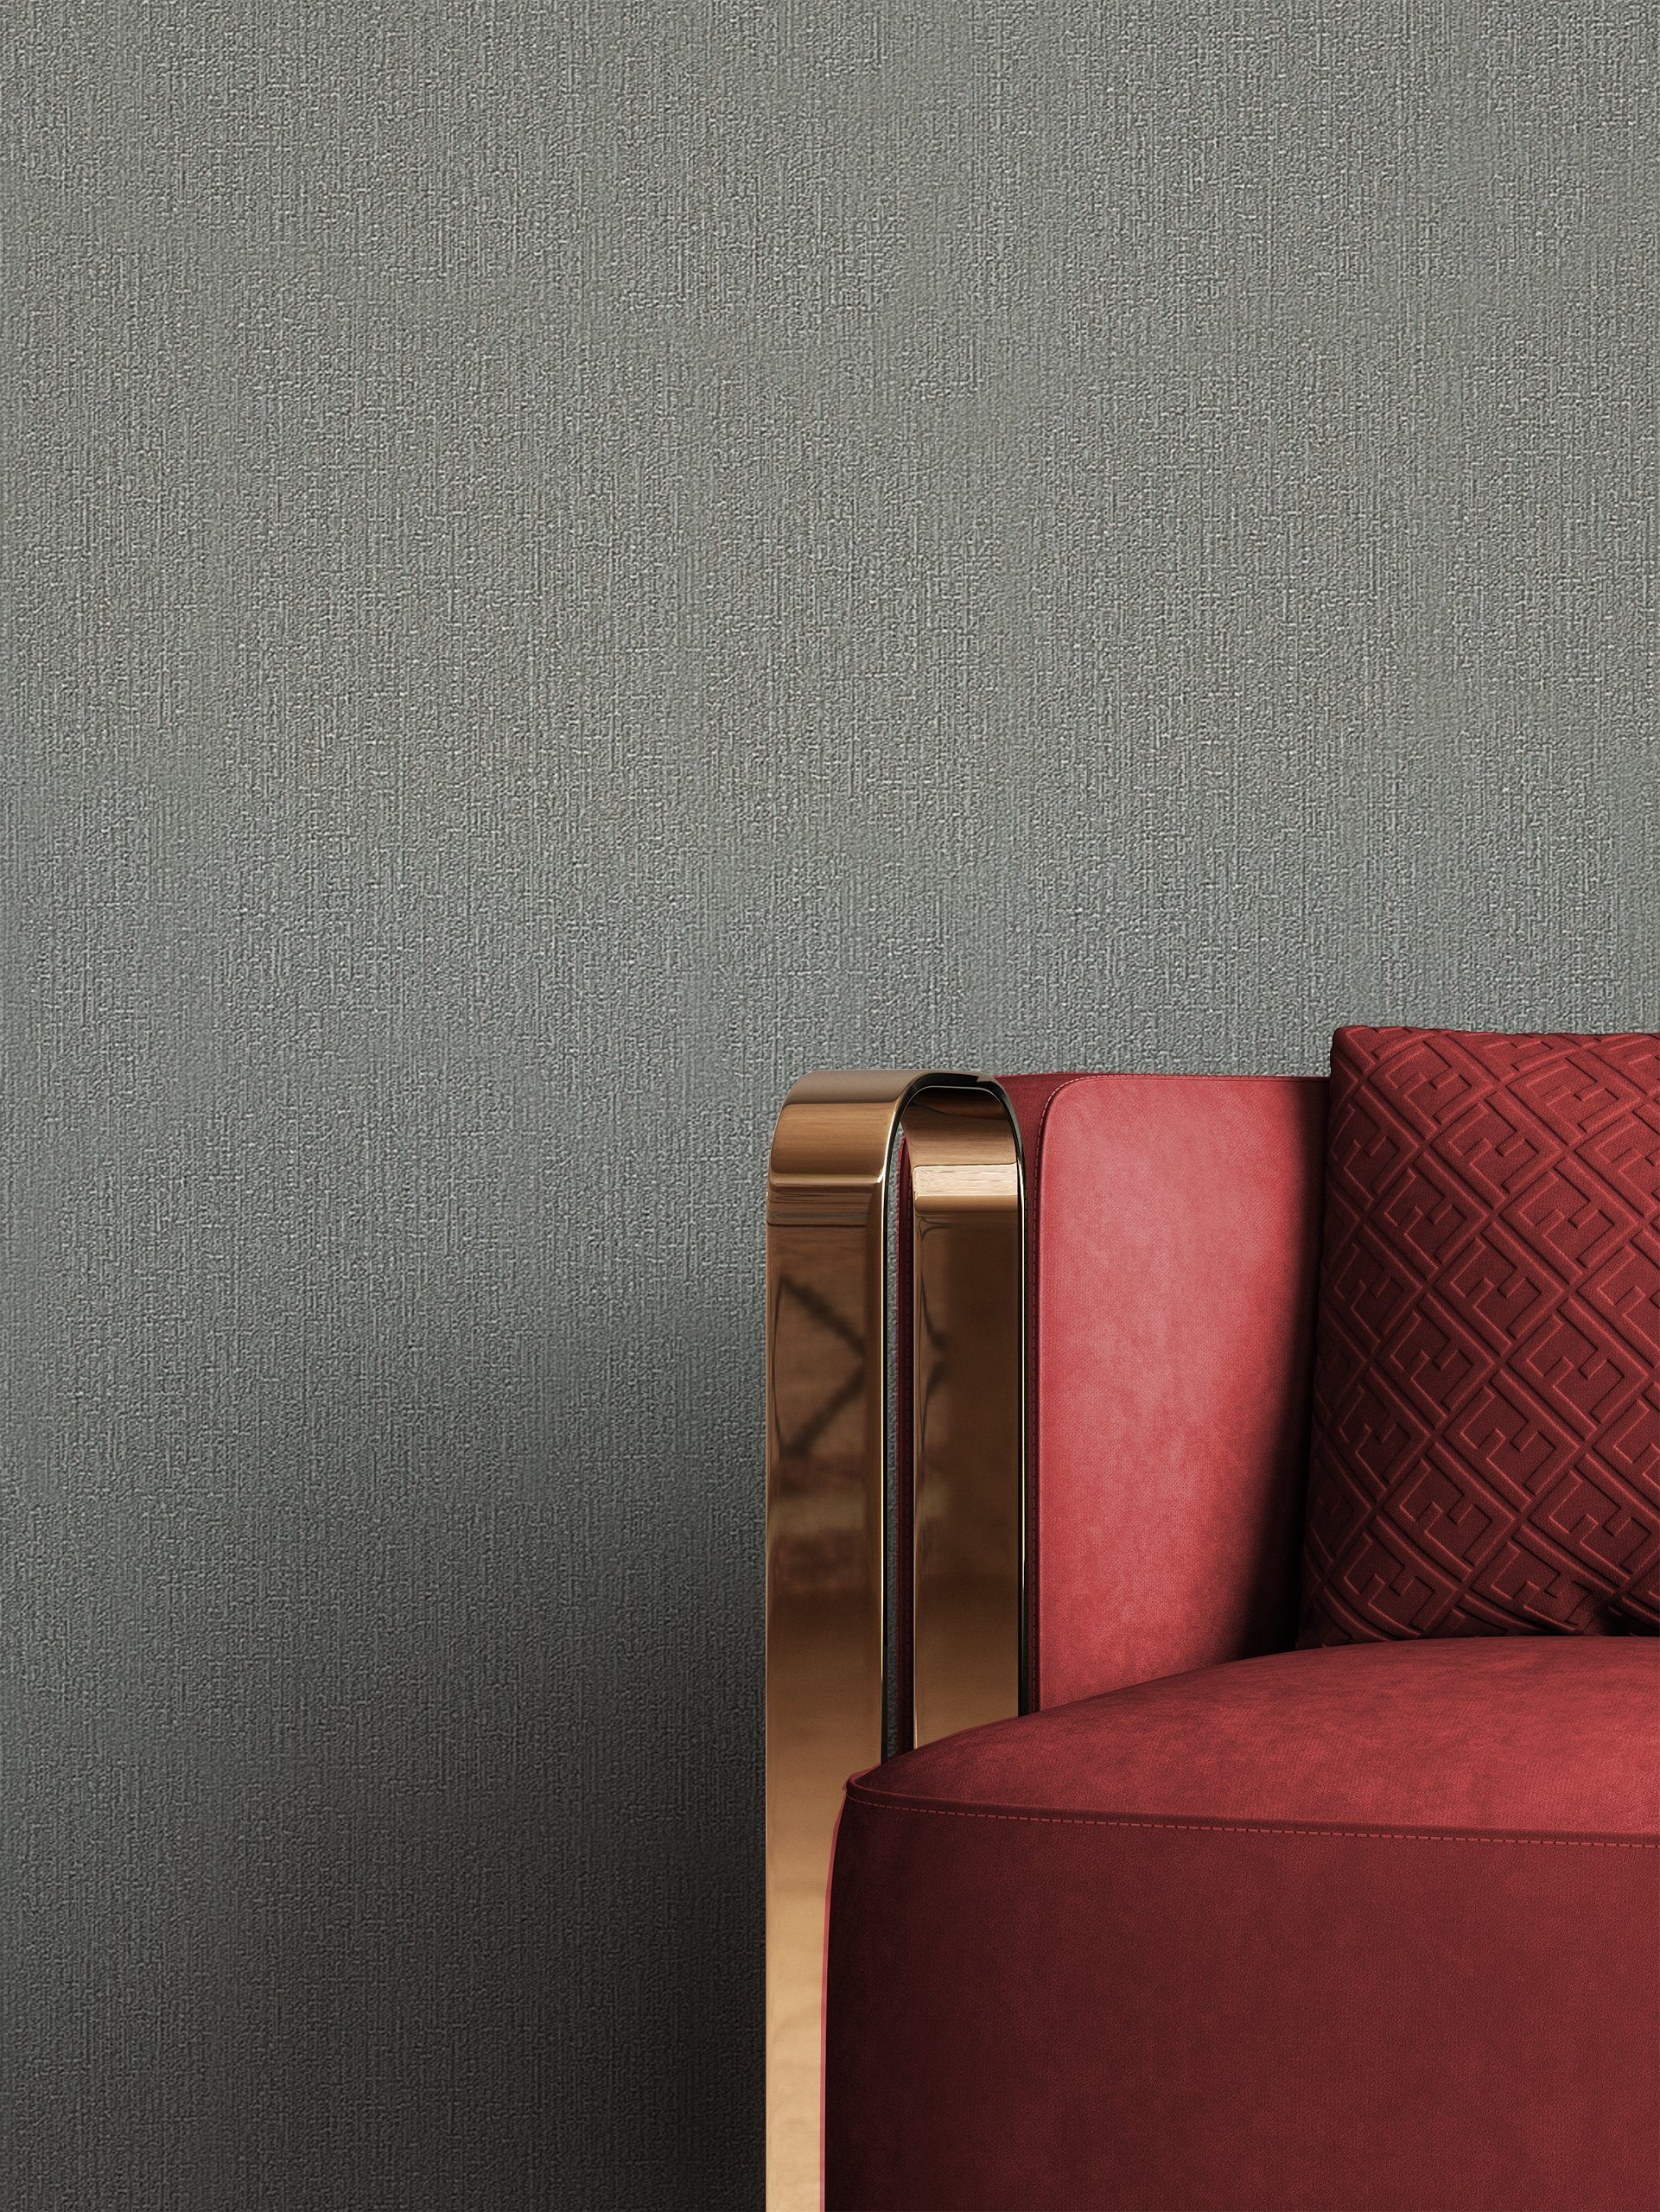 Newroom Vliestapete, Grau Tapete Uni Überbreite - Unitapete XXL Modern  Einfarbig Textur für Wohnzimmer Schlafzimmer Flur